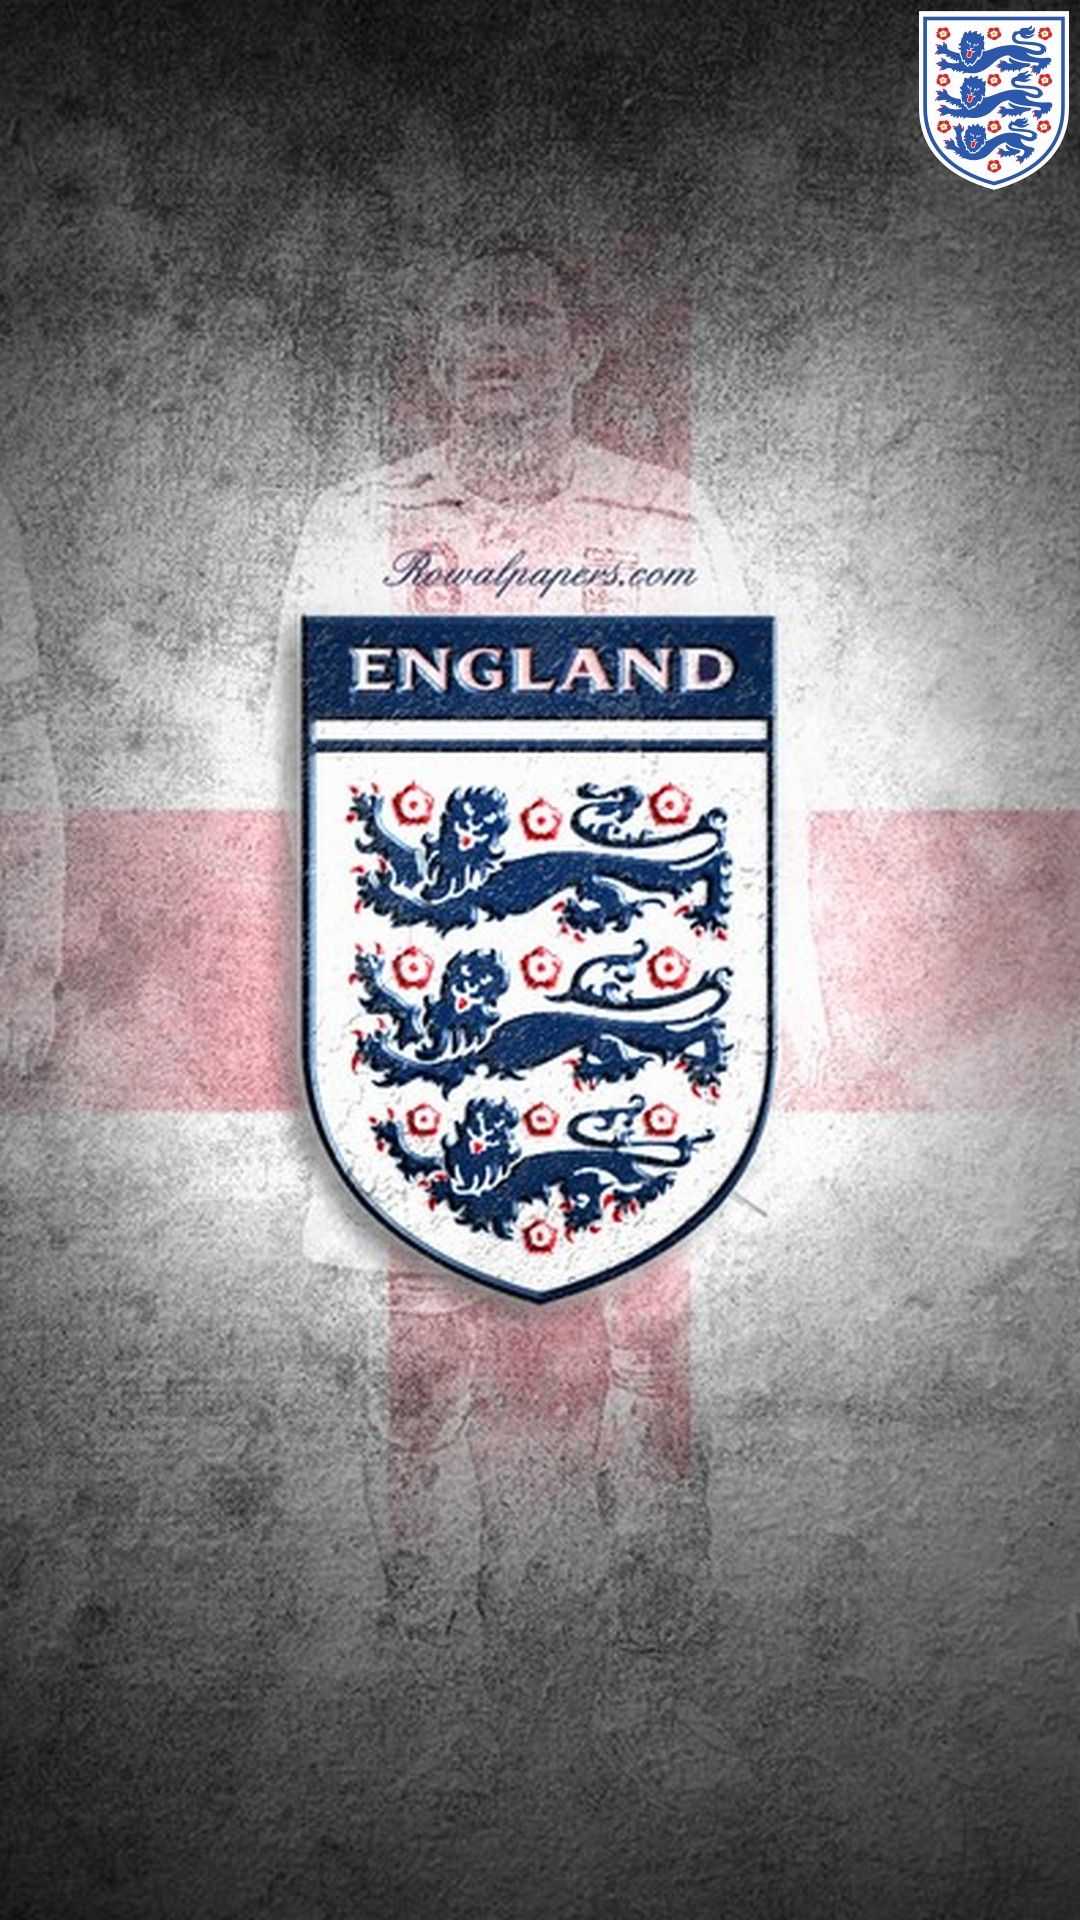 Wallpaper England Football iPhone Football Wallpaper